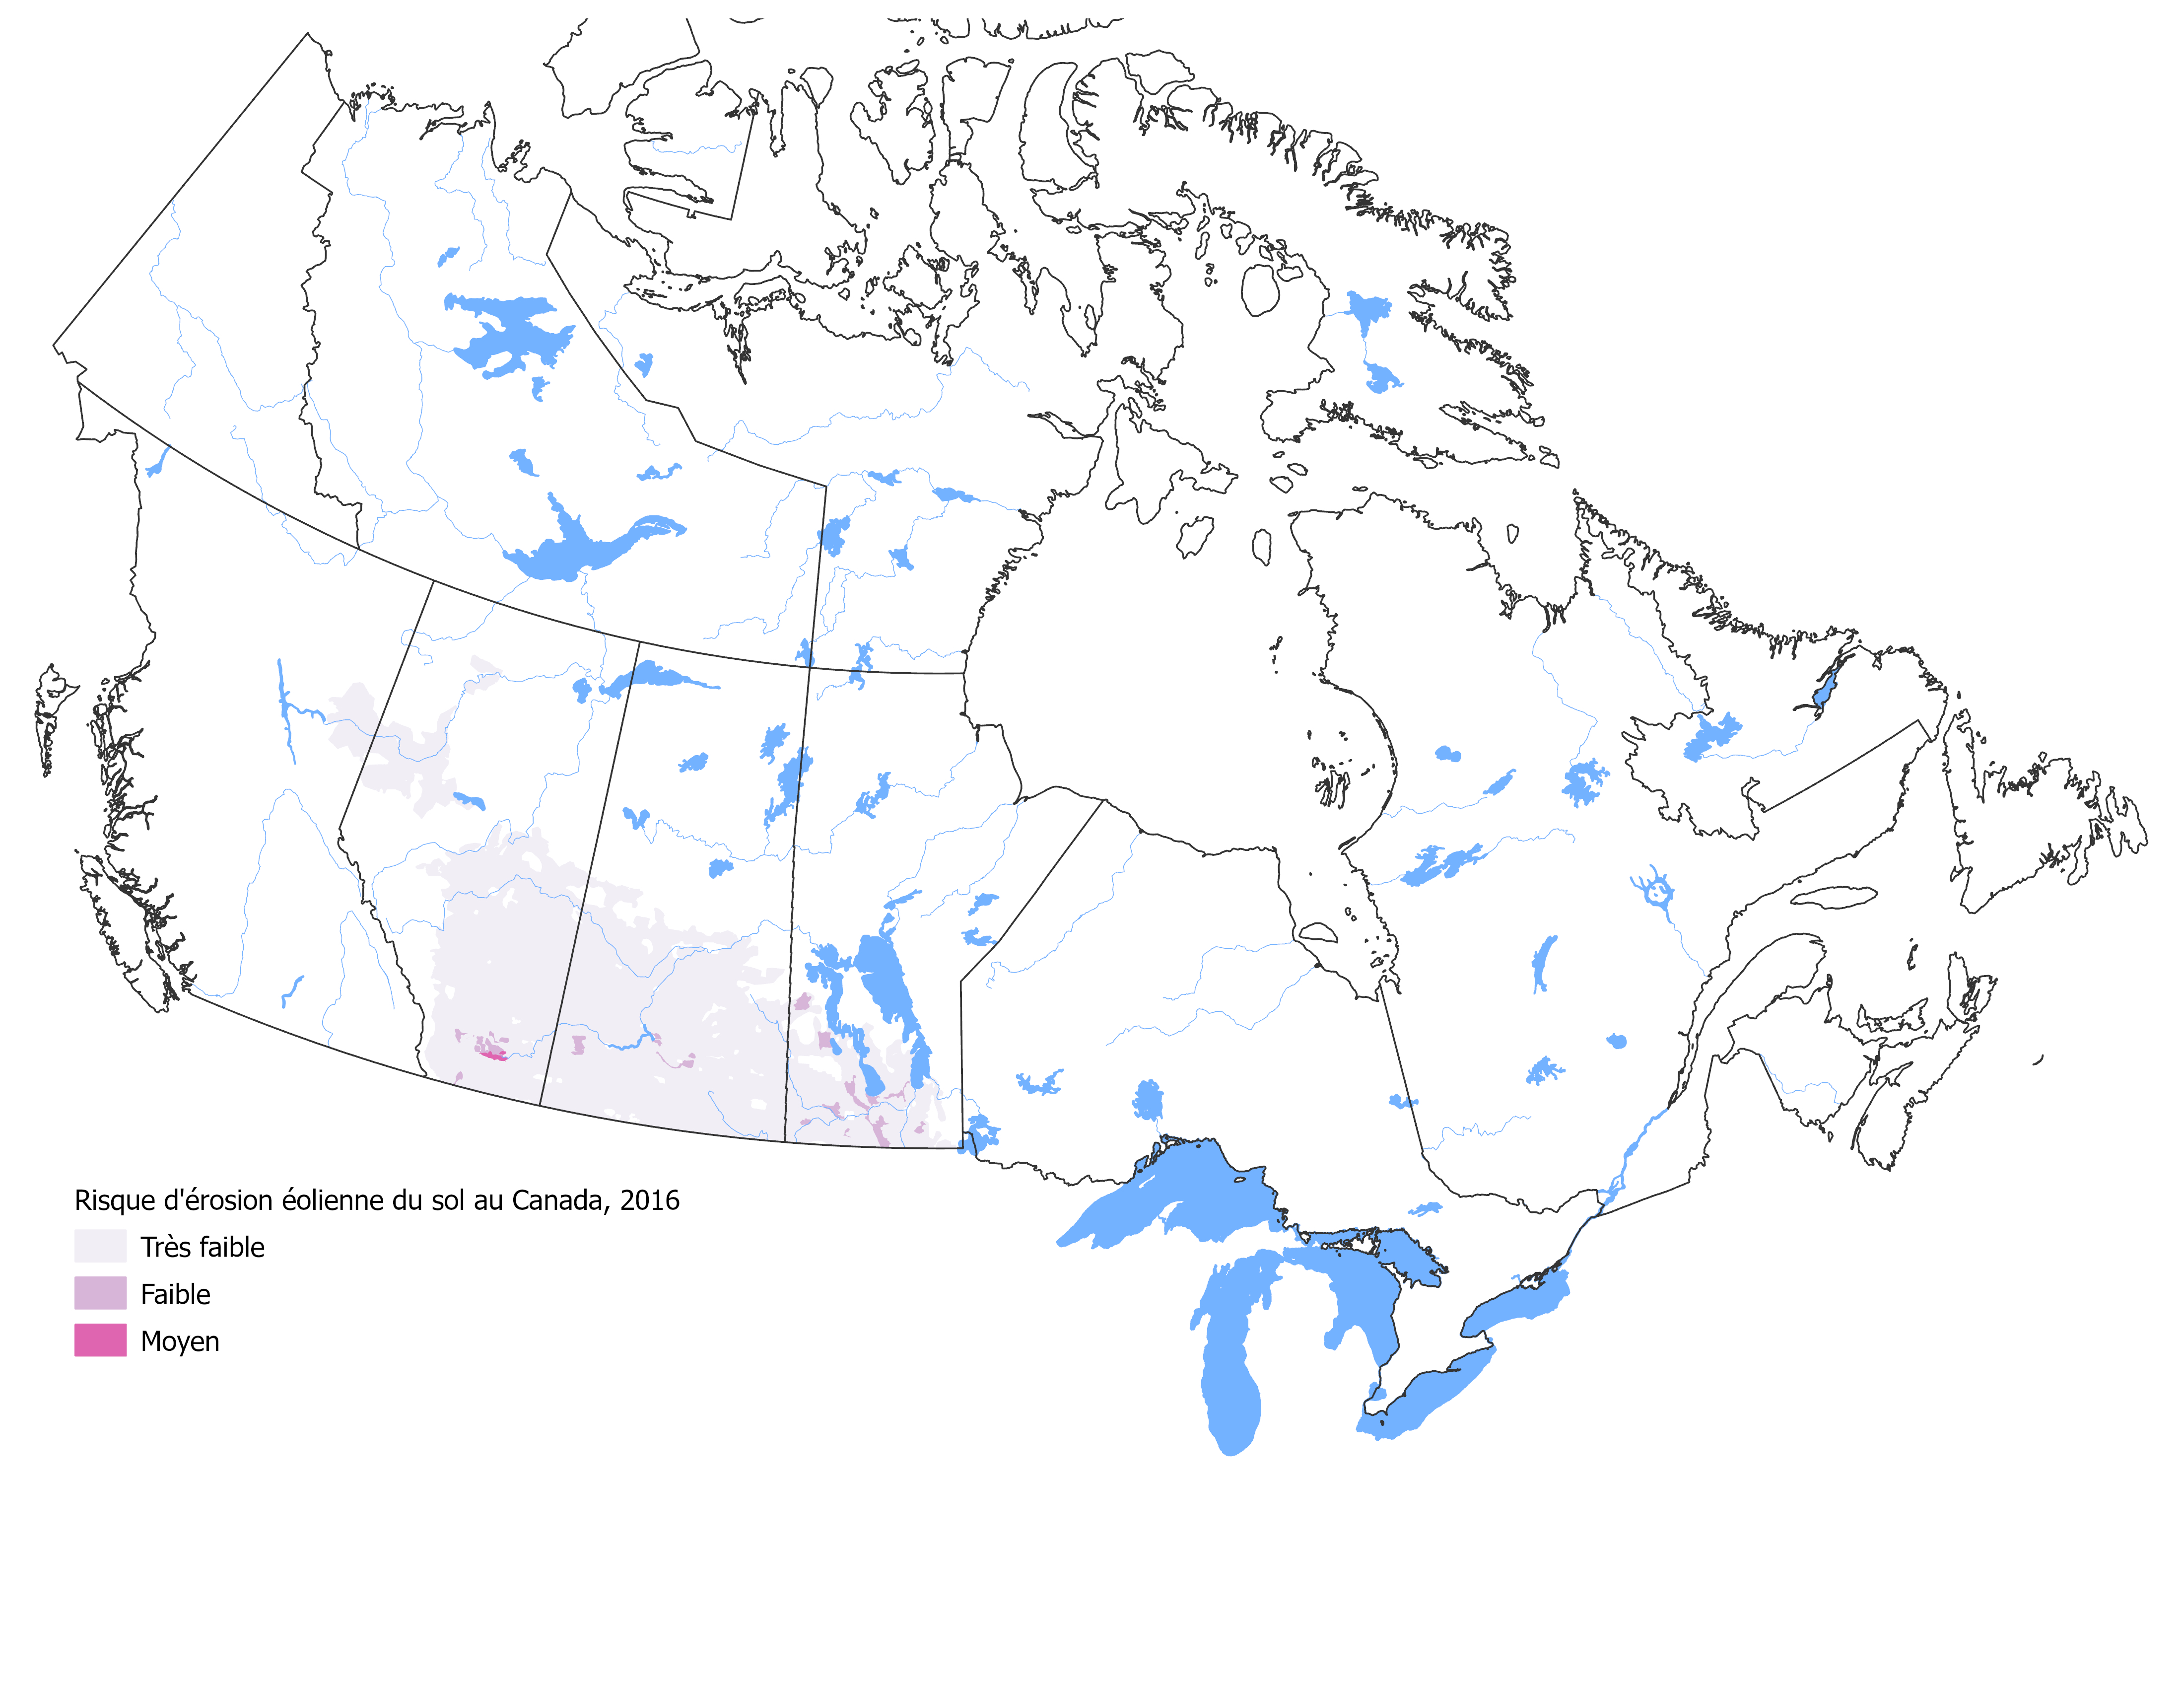 La figure 4 illustre le risque d'érosion du sol associé à la composante éolienne dans l'ensemble du Canada en 2016, avec un code de couleurs basé sur le niveau de risque.